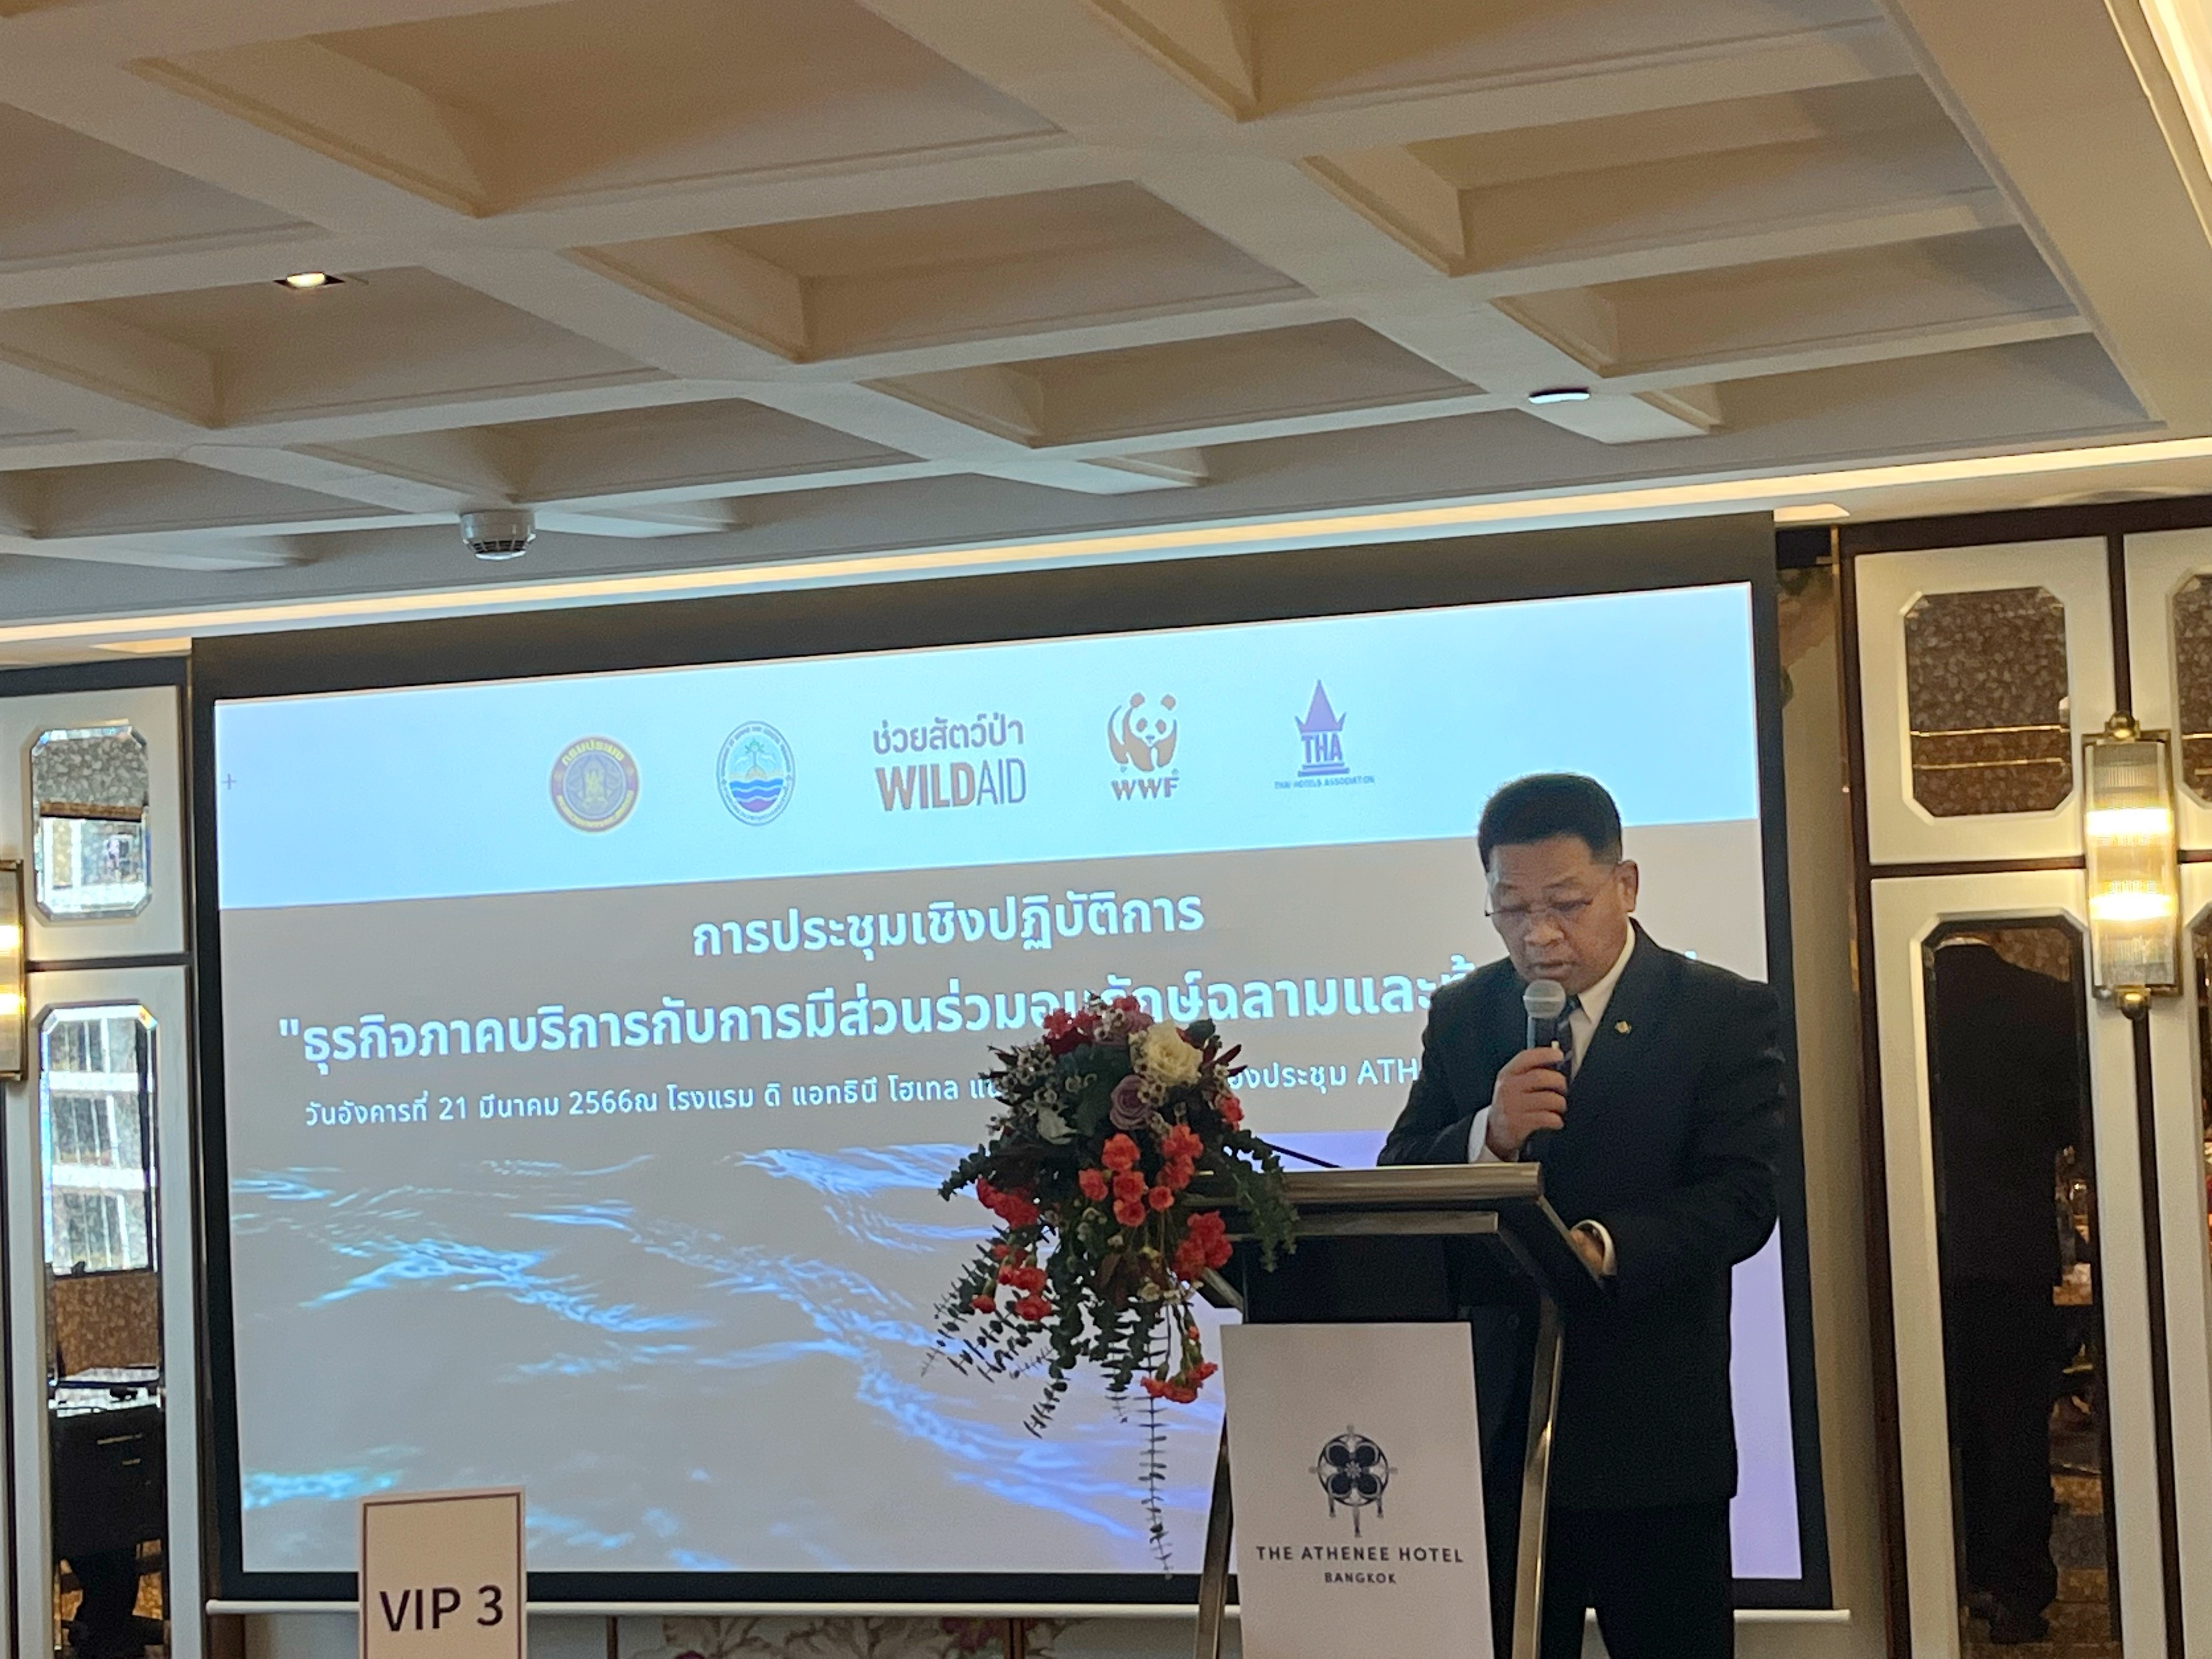 สวพ. ร่วมการประชุมเชิงปฏิบัติการเพื่อการเสริมสร้างศักยภาพในการอนุรักษ์ปลาฉลาม และปลากระเบน ในประเทศไทย ครั้งที่ 4